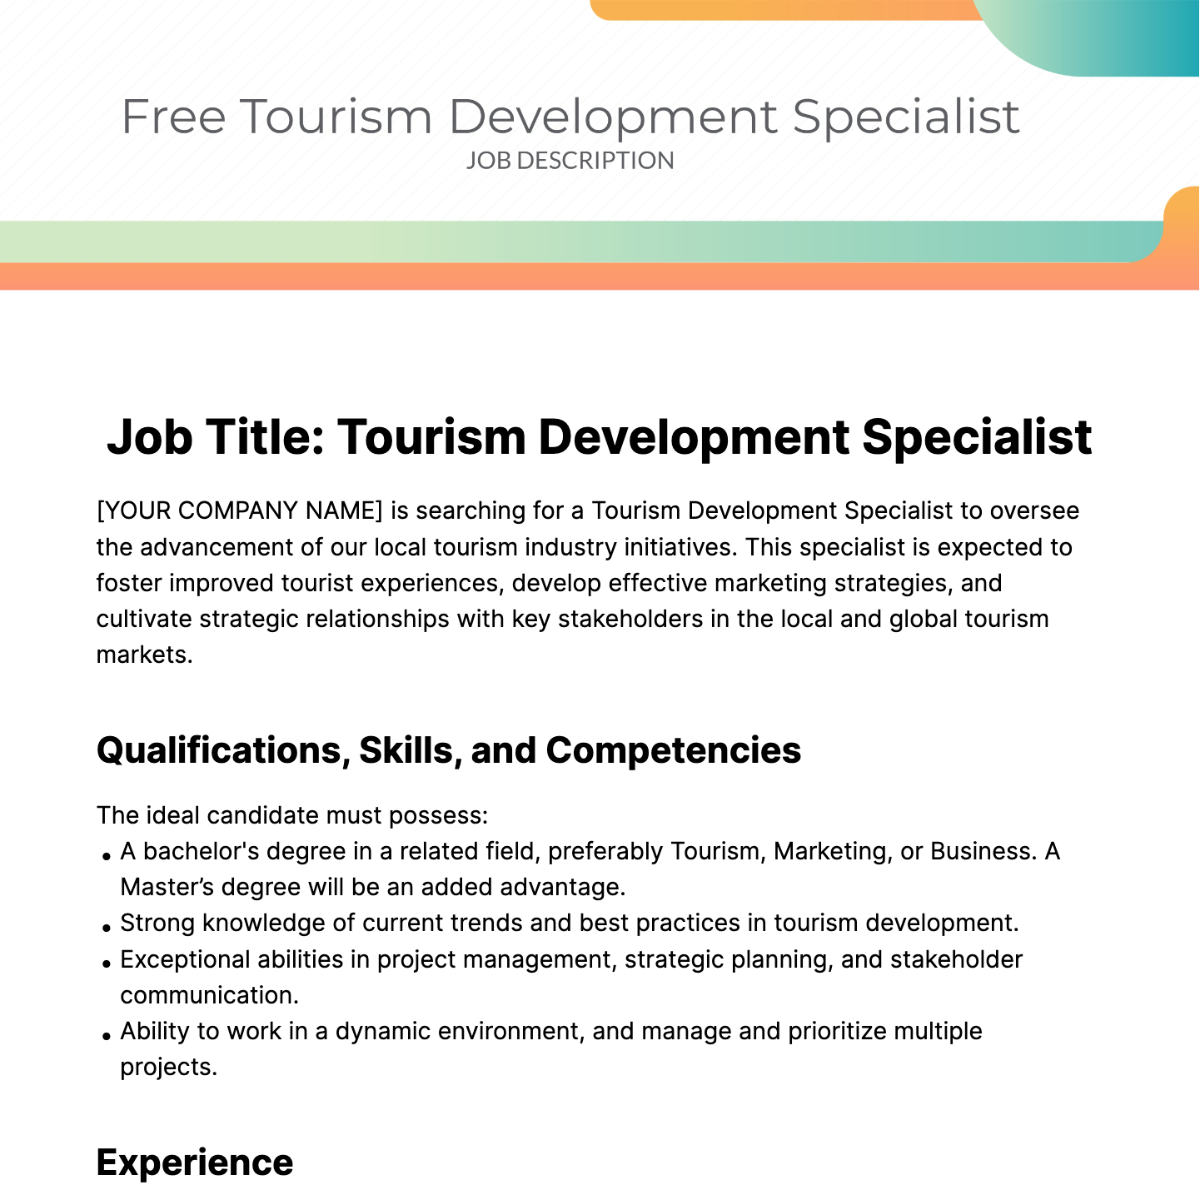 Free Tourism Development Specialist Job Description Template